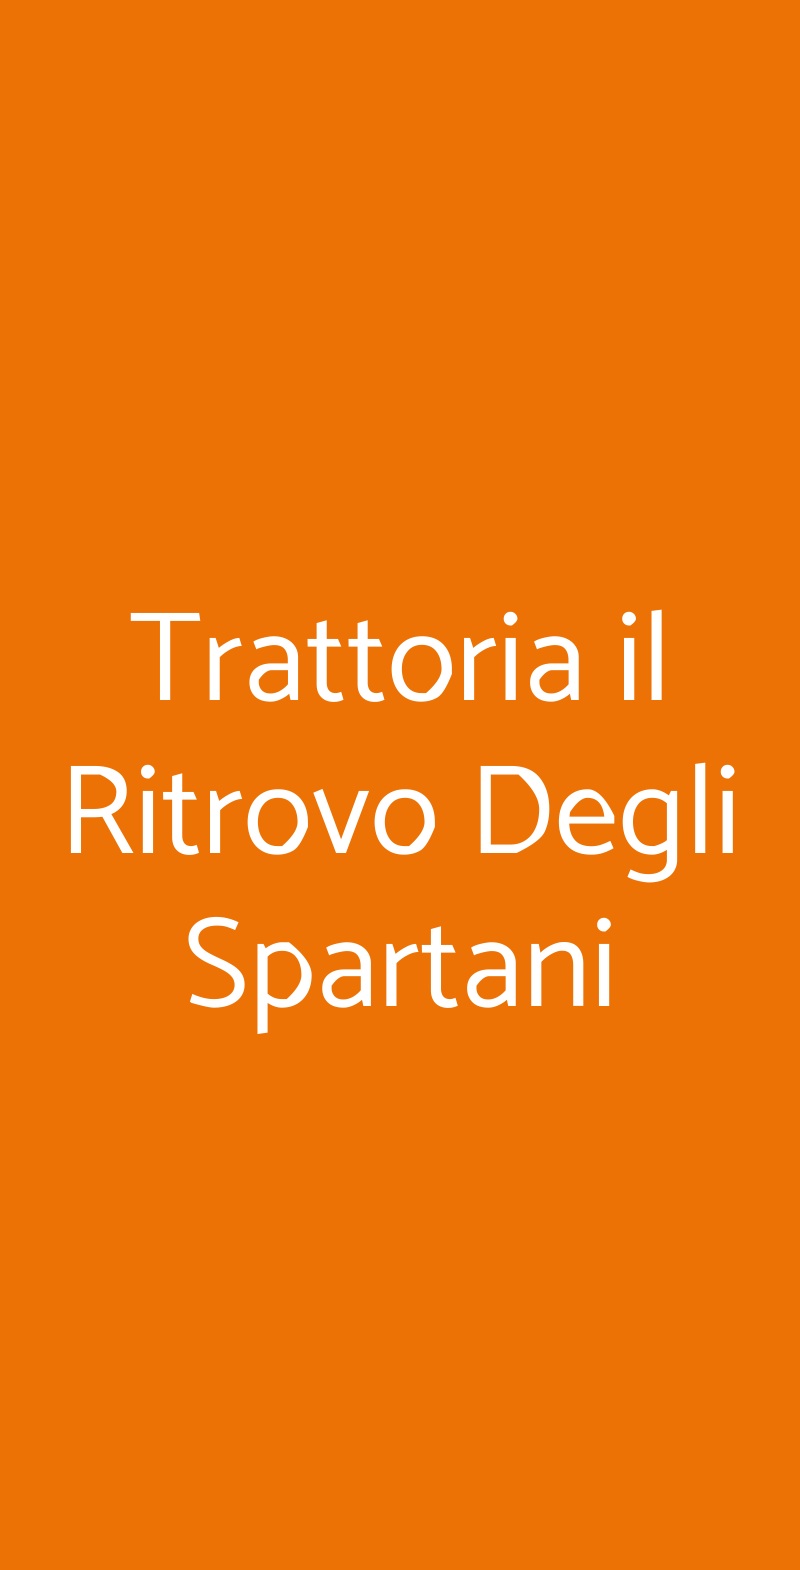 Trattoria il Ritrovo Degli Spartani Taranto menù 1 pagina